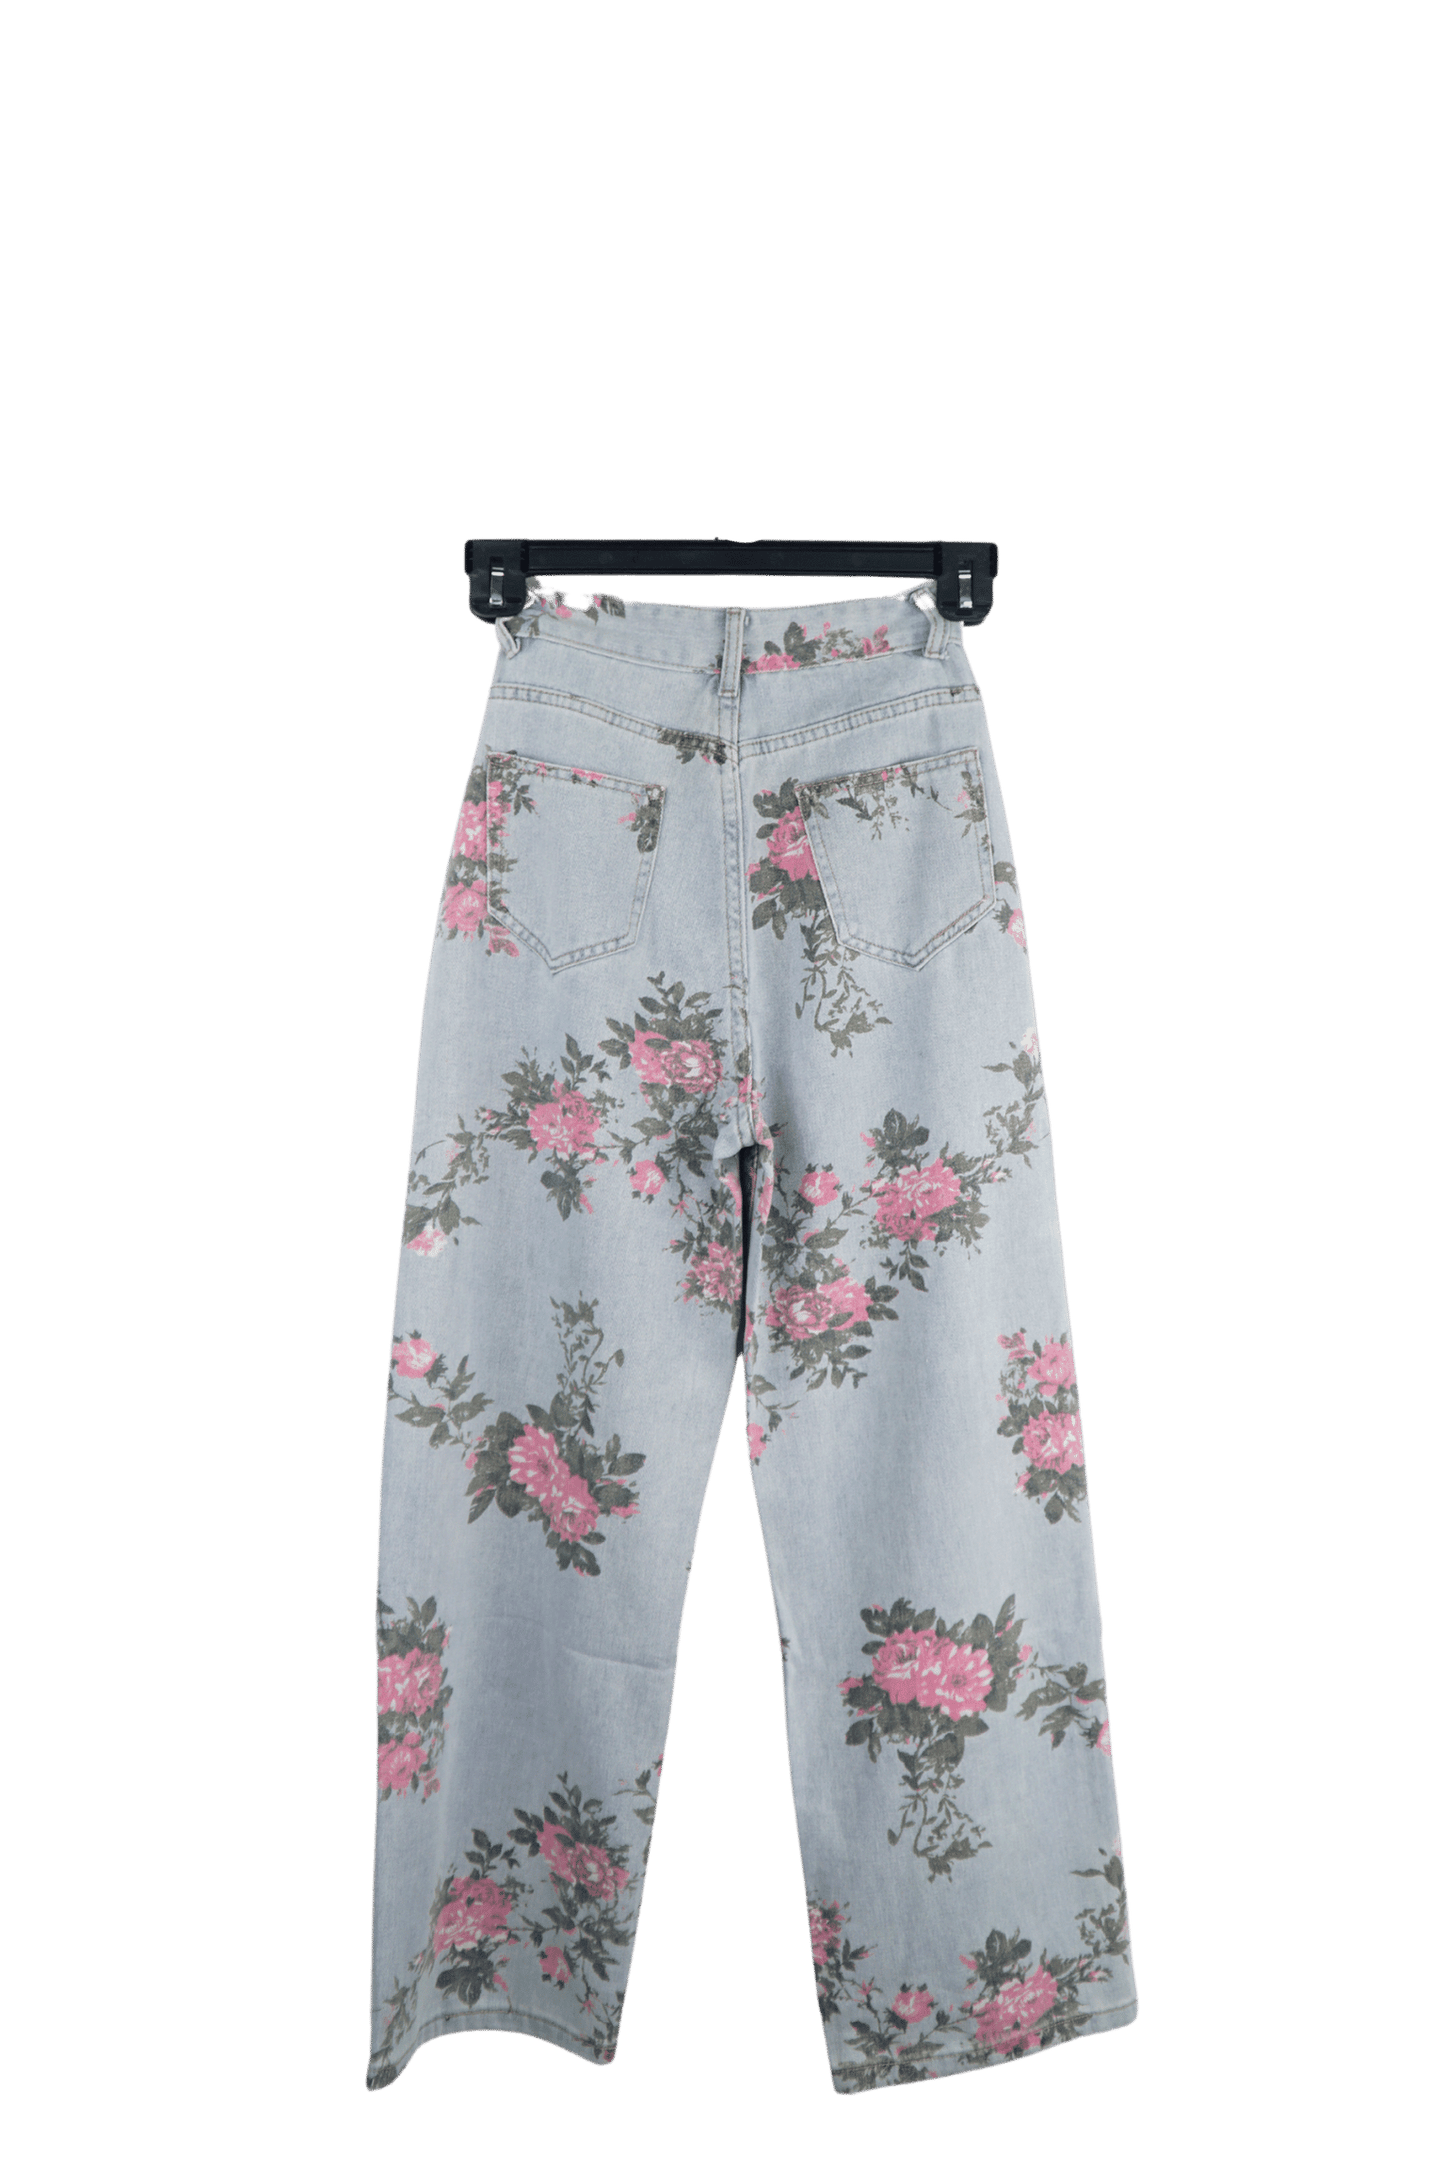 Flower Print Women's Baggy Jeans